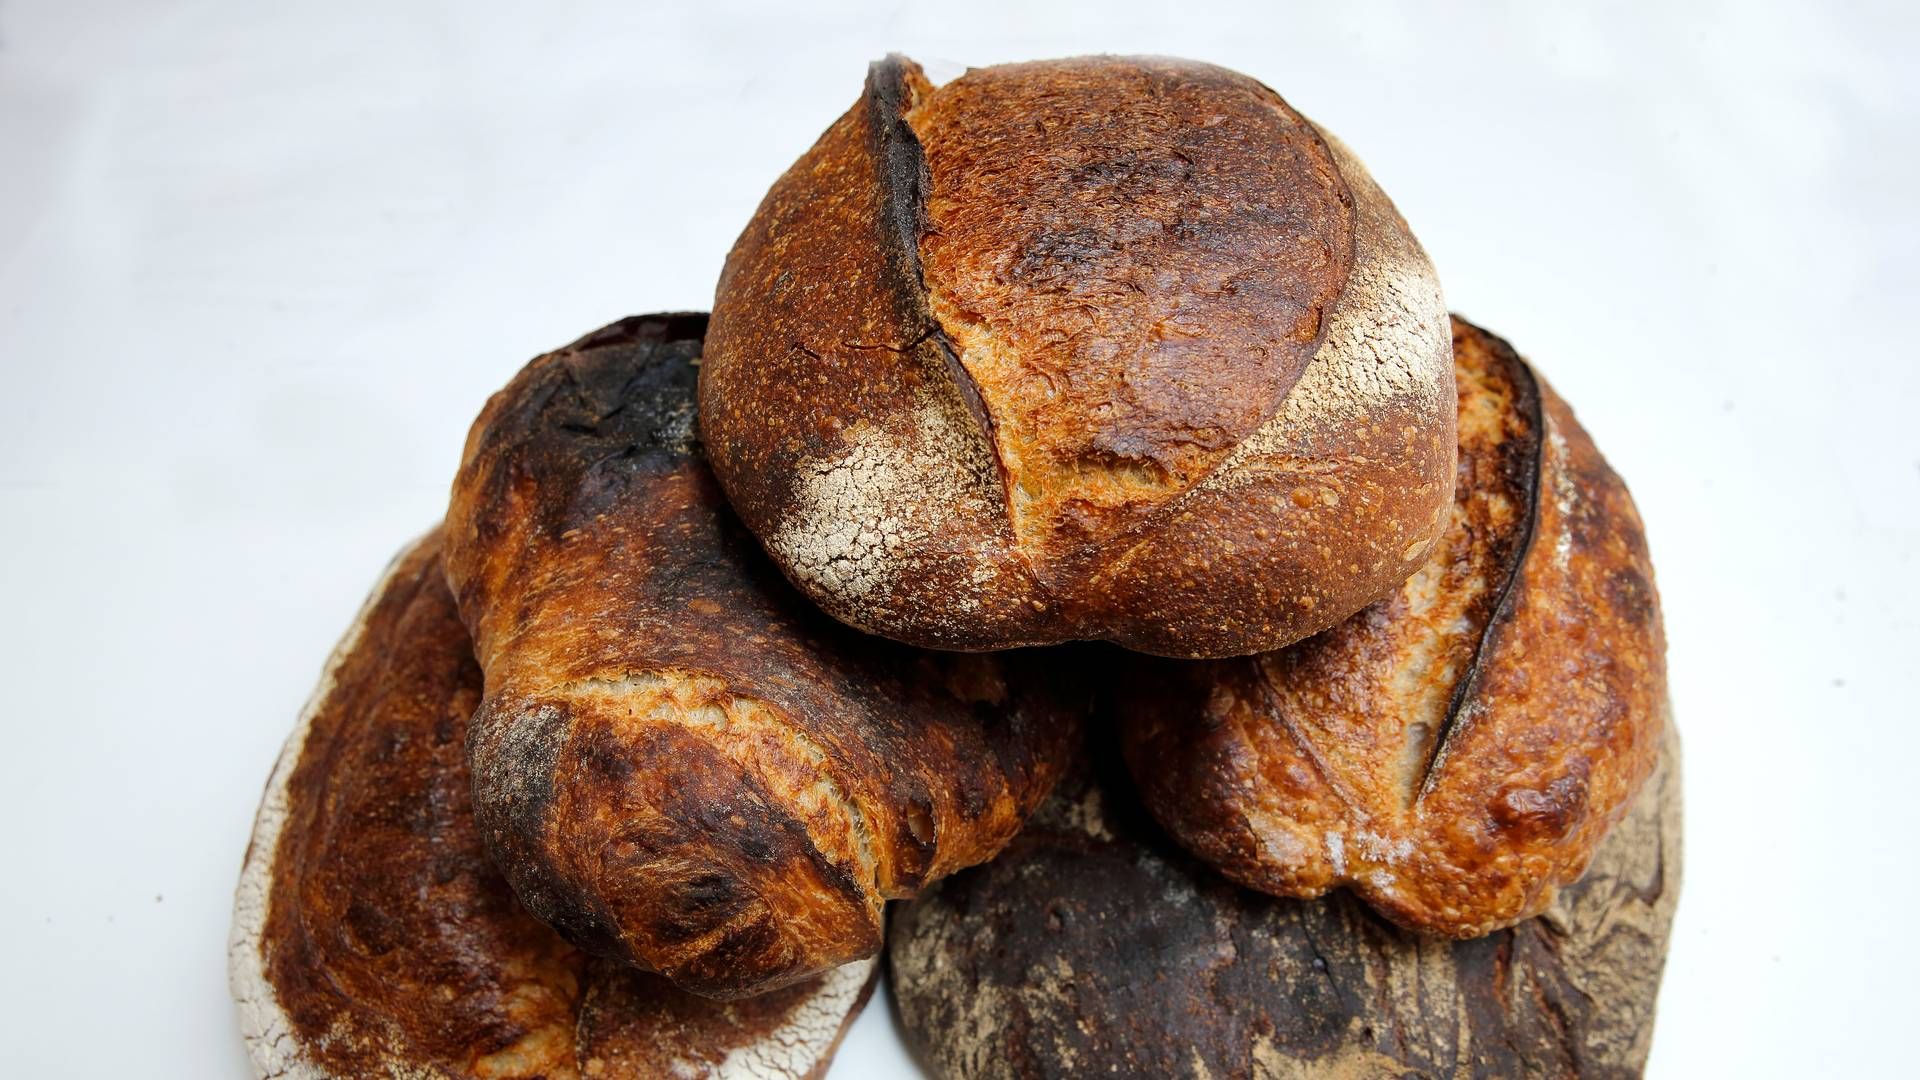 Credin, der er ejet af Orkla, producerer blandt andet bageringredienser til brød og kager. | Foto: Jens Dresling/Ritzau Scanpix.